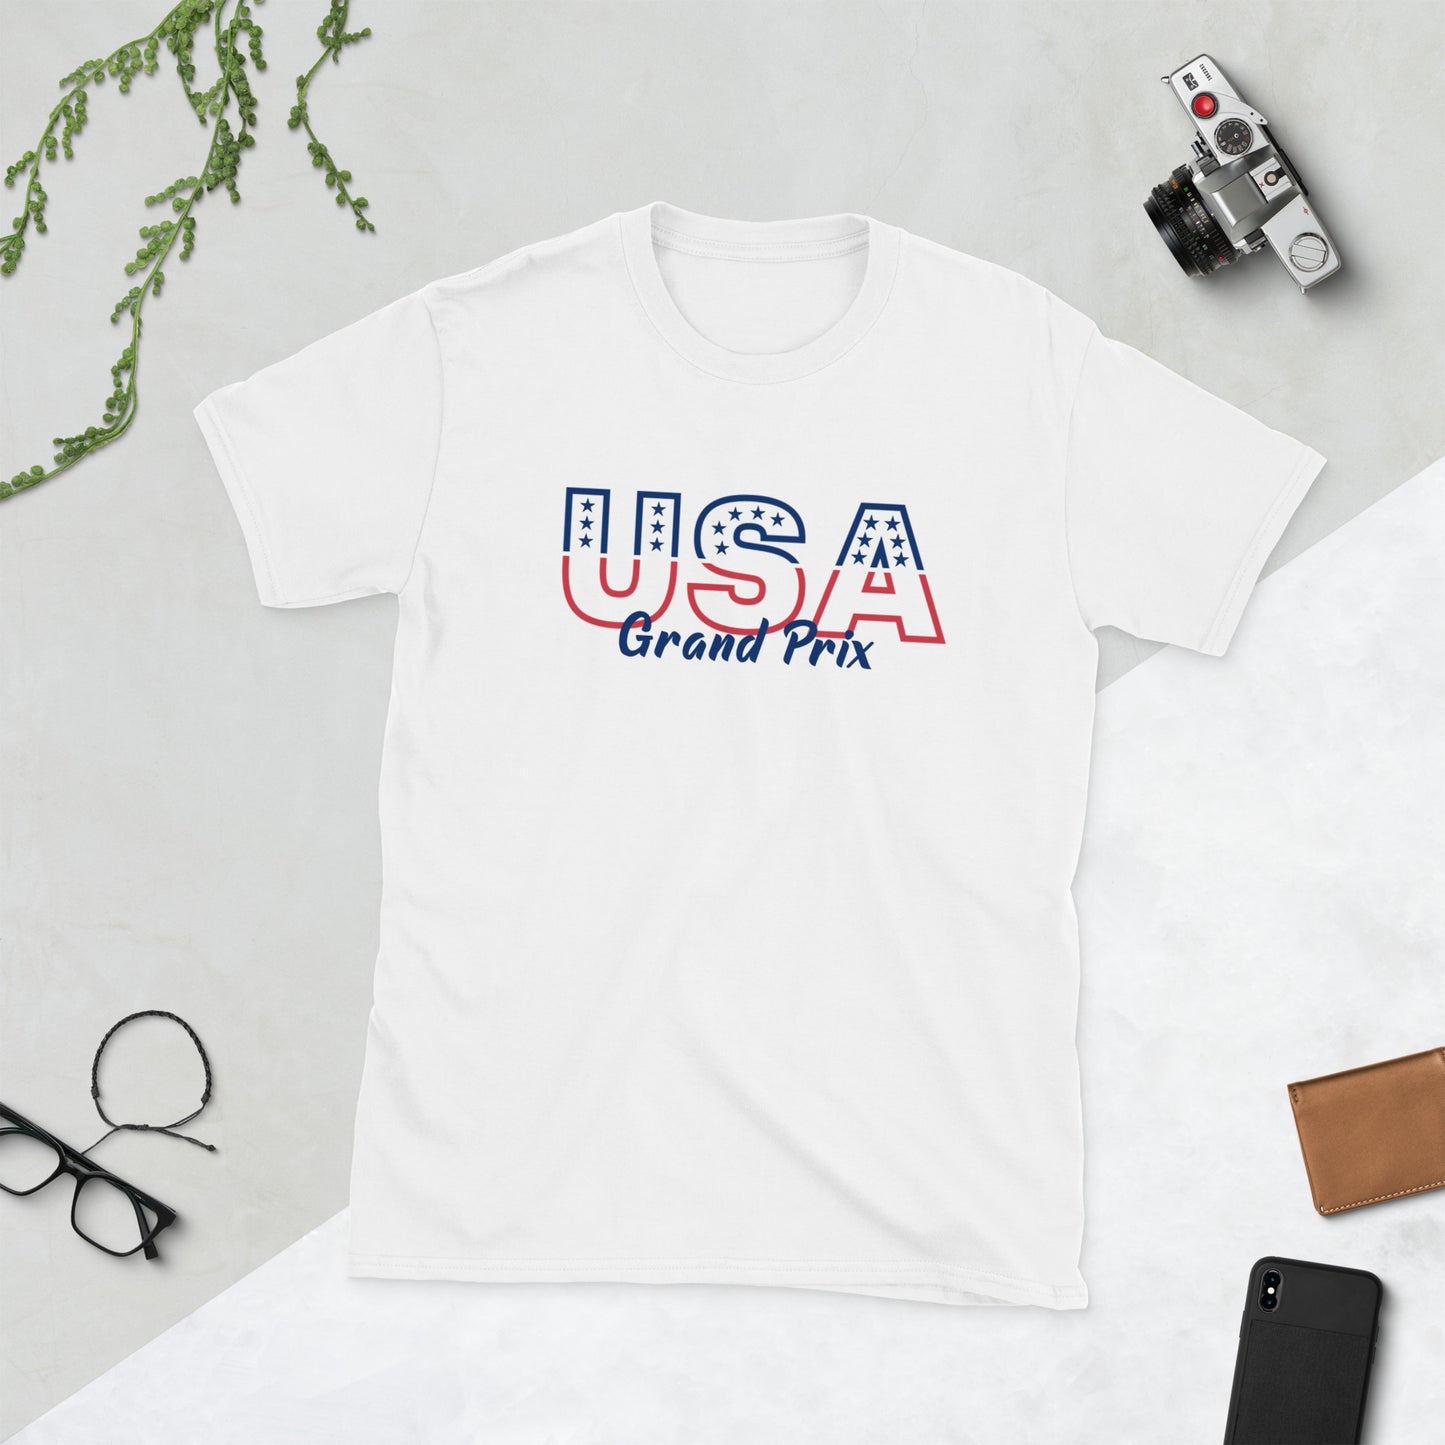 united states grand prix t-shirt white